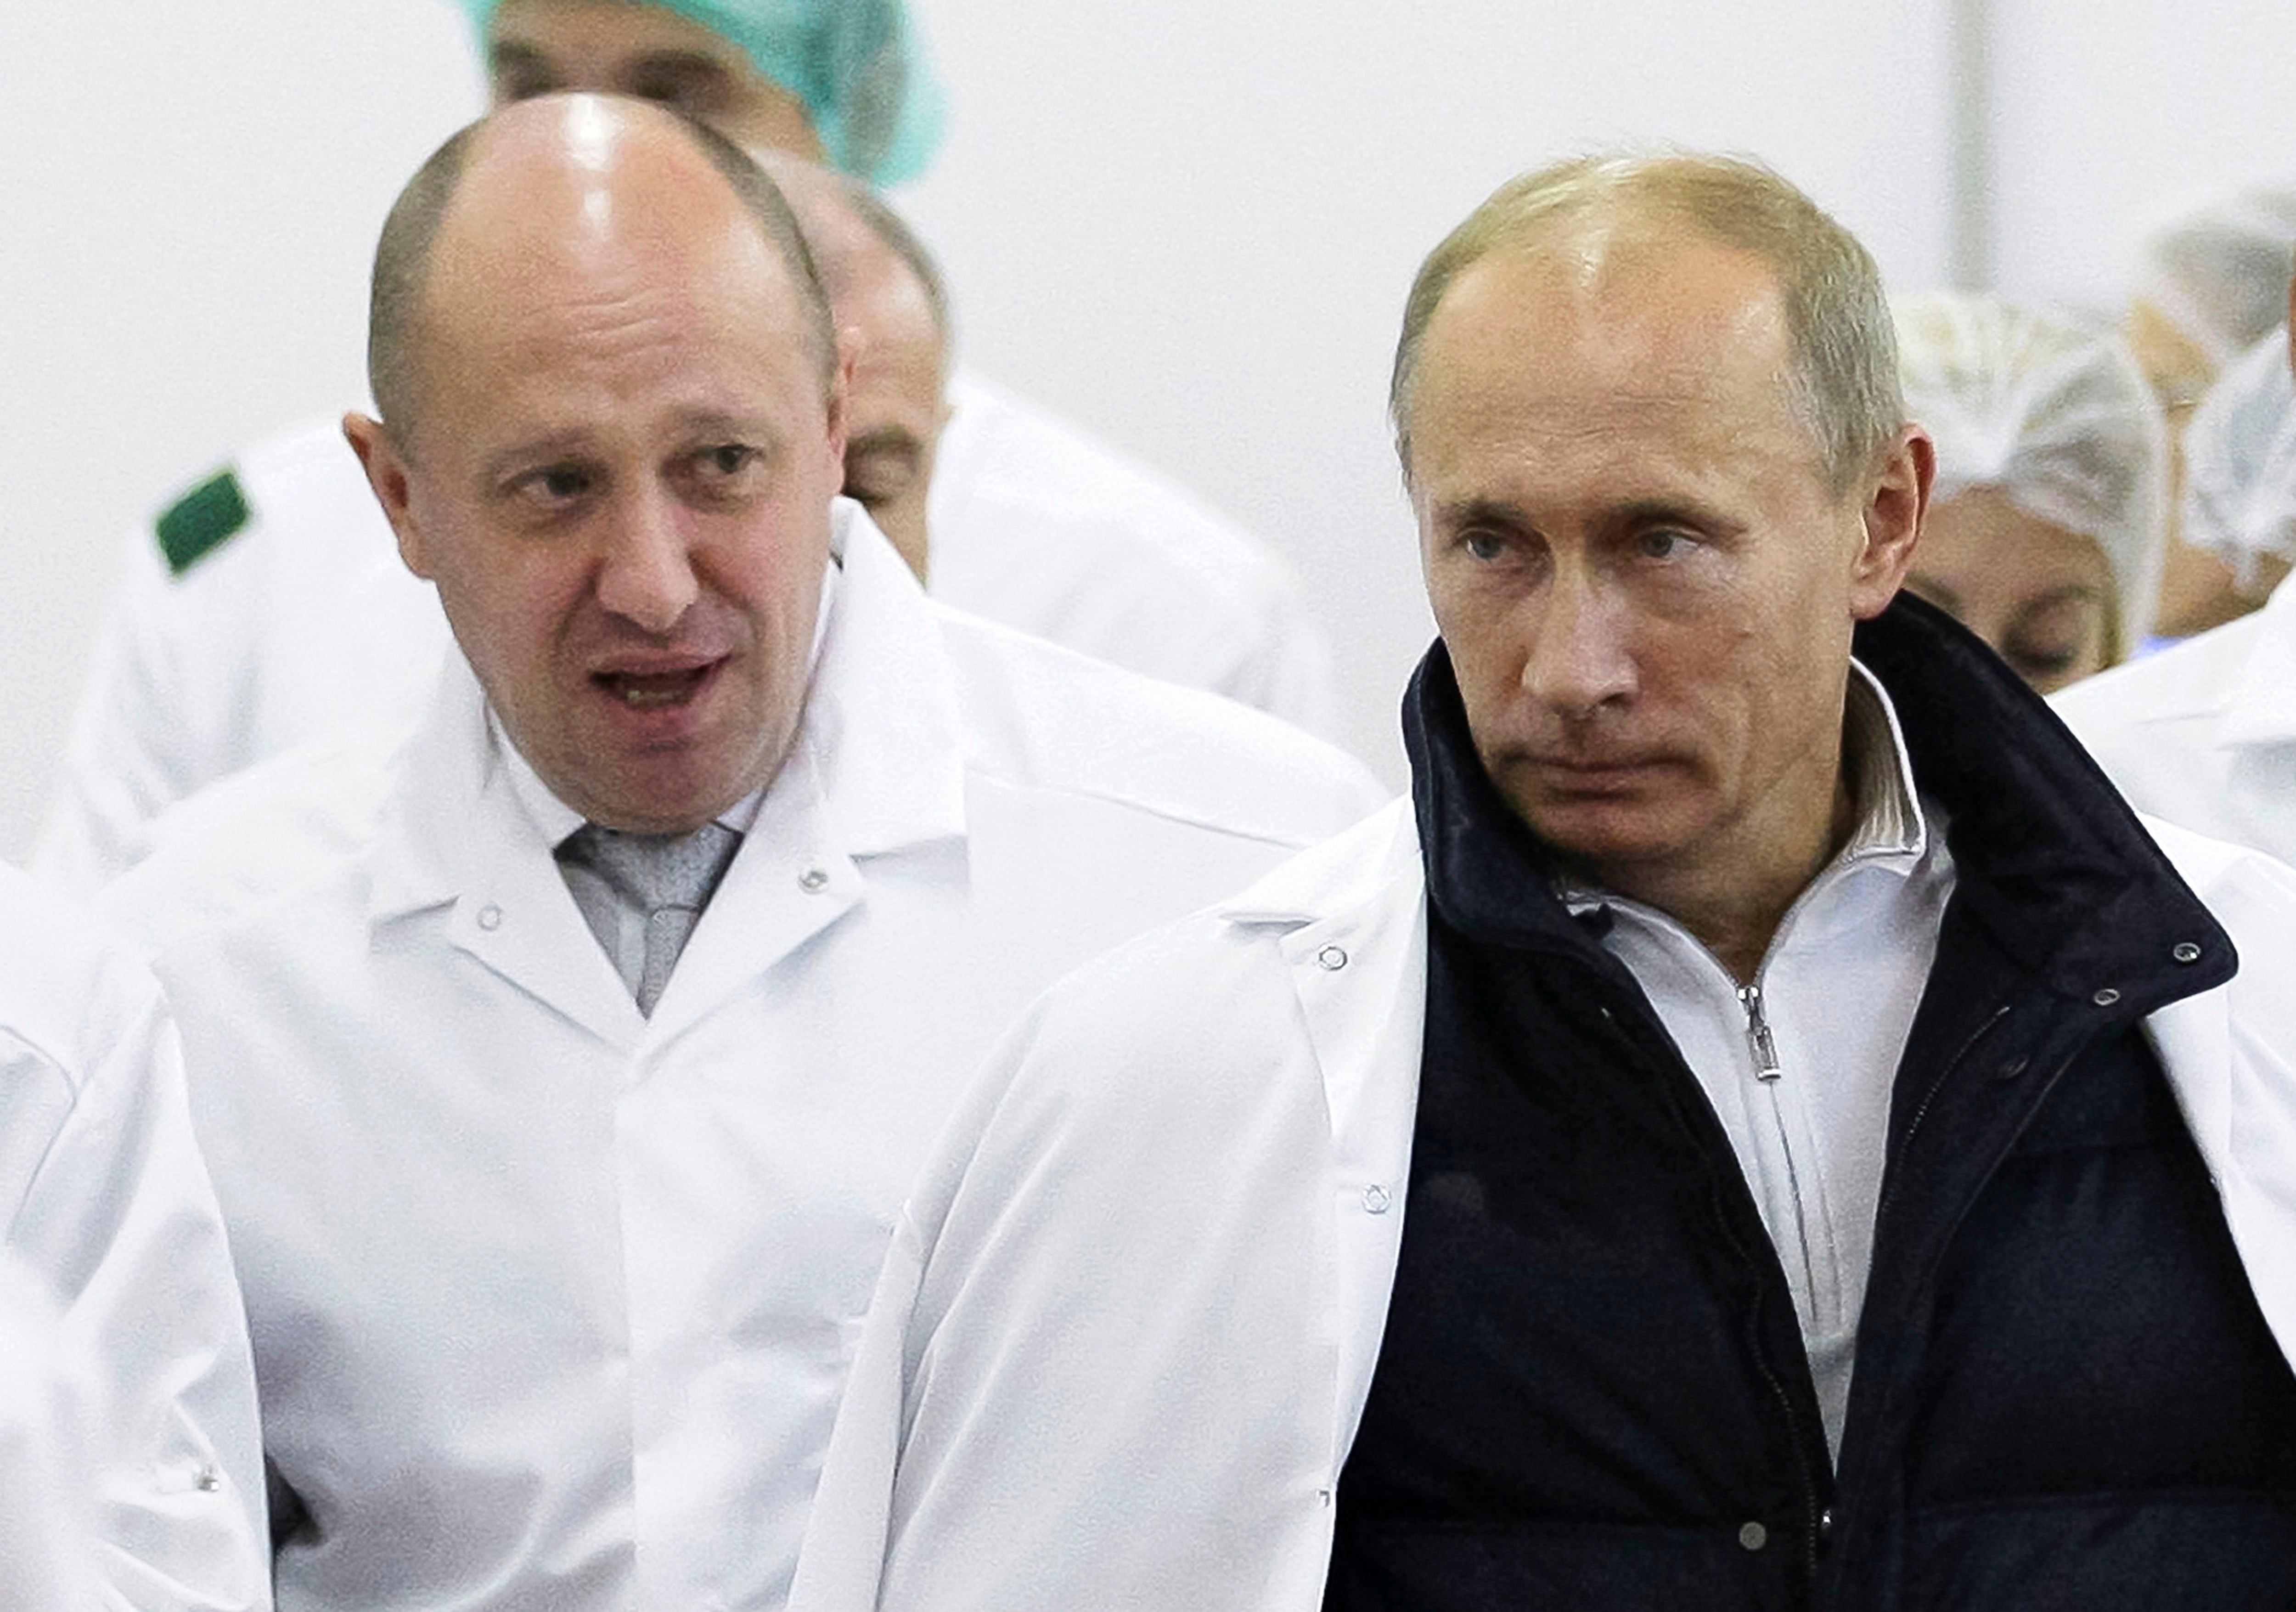 El empresario Yevgeny Prigozhin, izquierda, le muestra al presidente ruso Vladímir Putin su fábrica de comidas escolares, el 20 de septiembre de 2010, en las afueras de San Petersburgo, Rusia. (Alexei Druzhinin, Sputnik, foto compartida por el Kremlin vía AP, archivo)